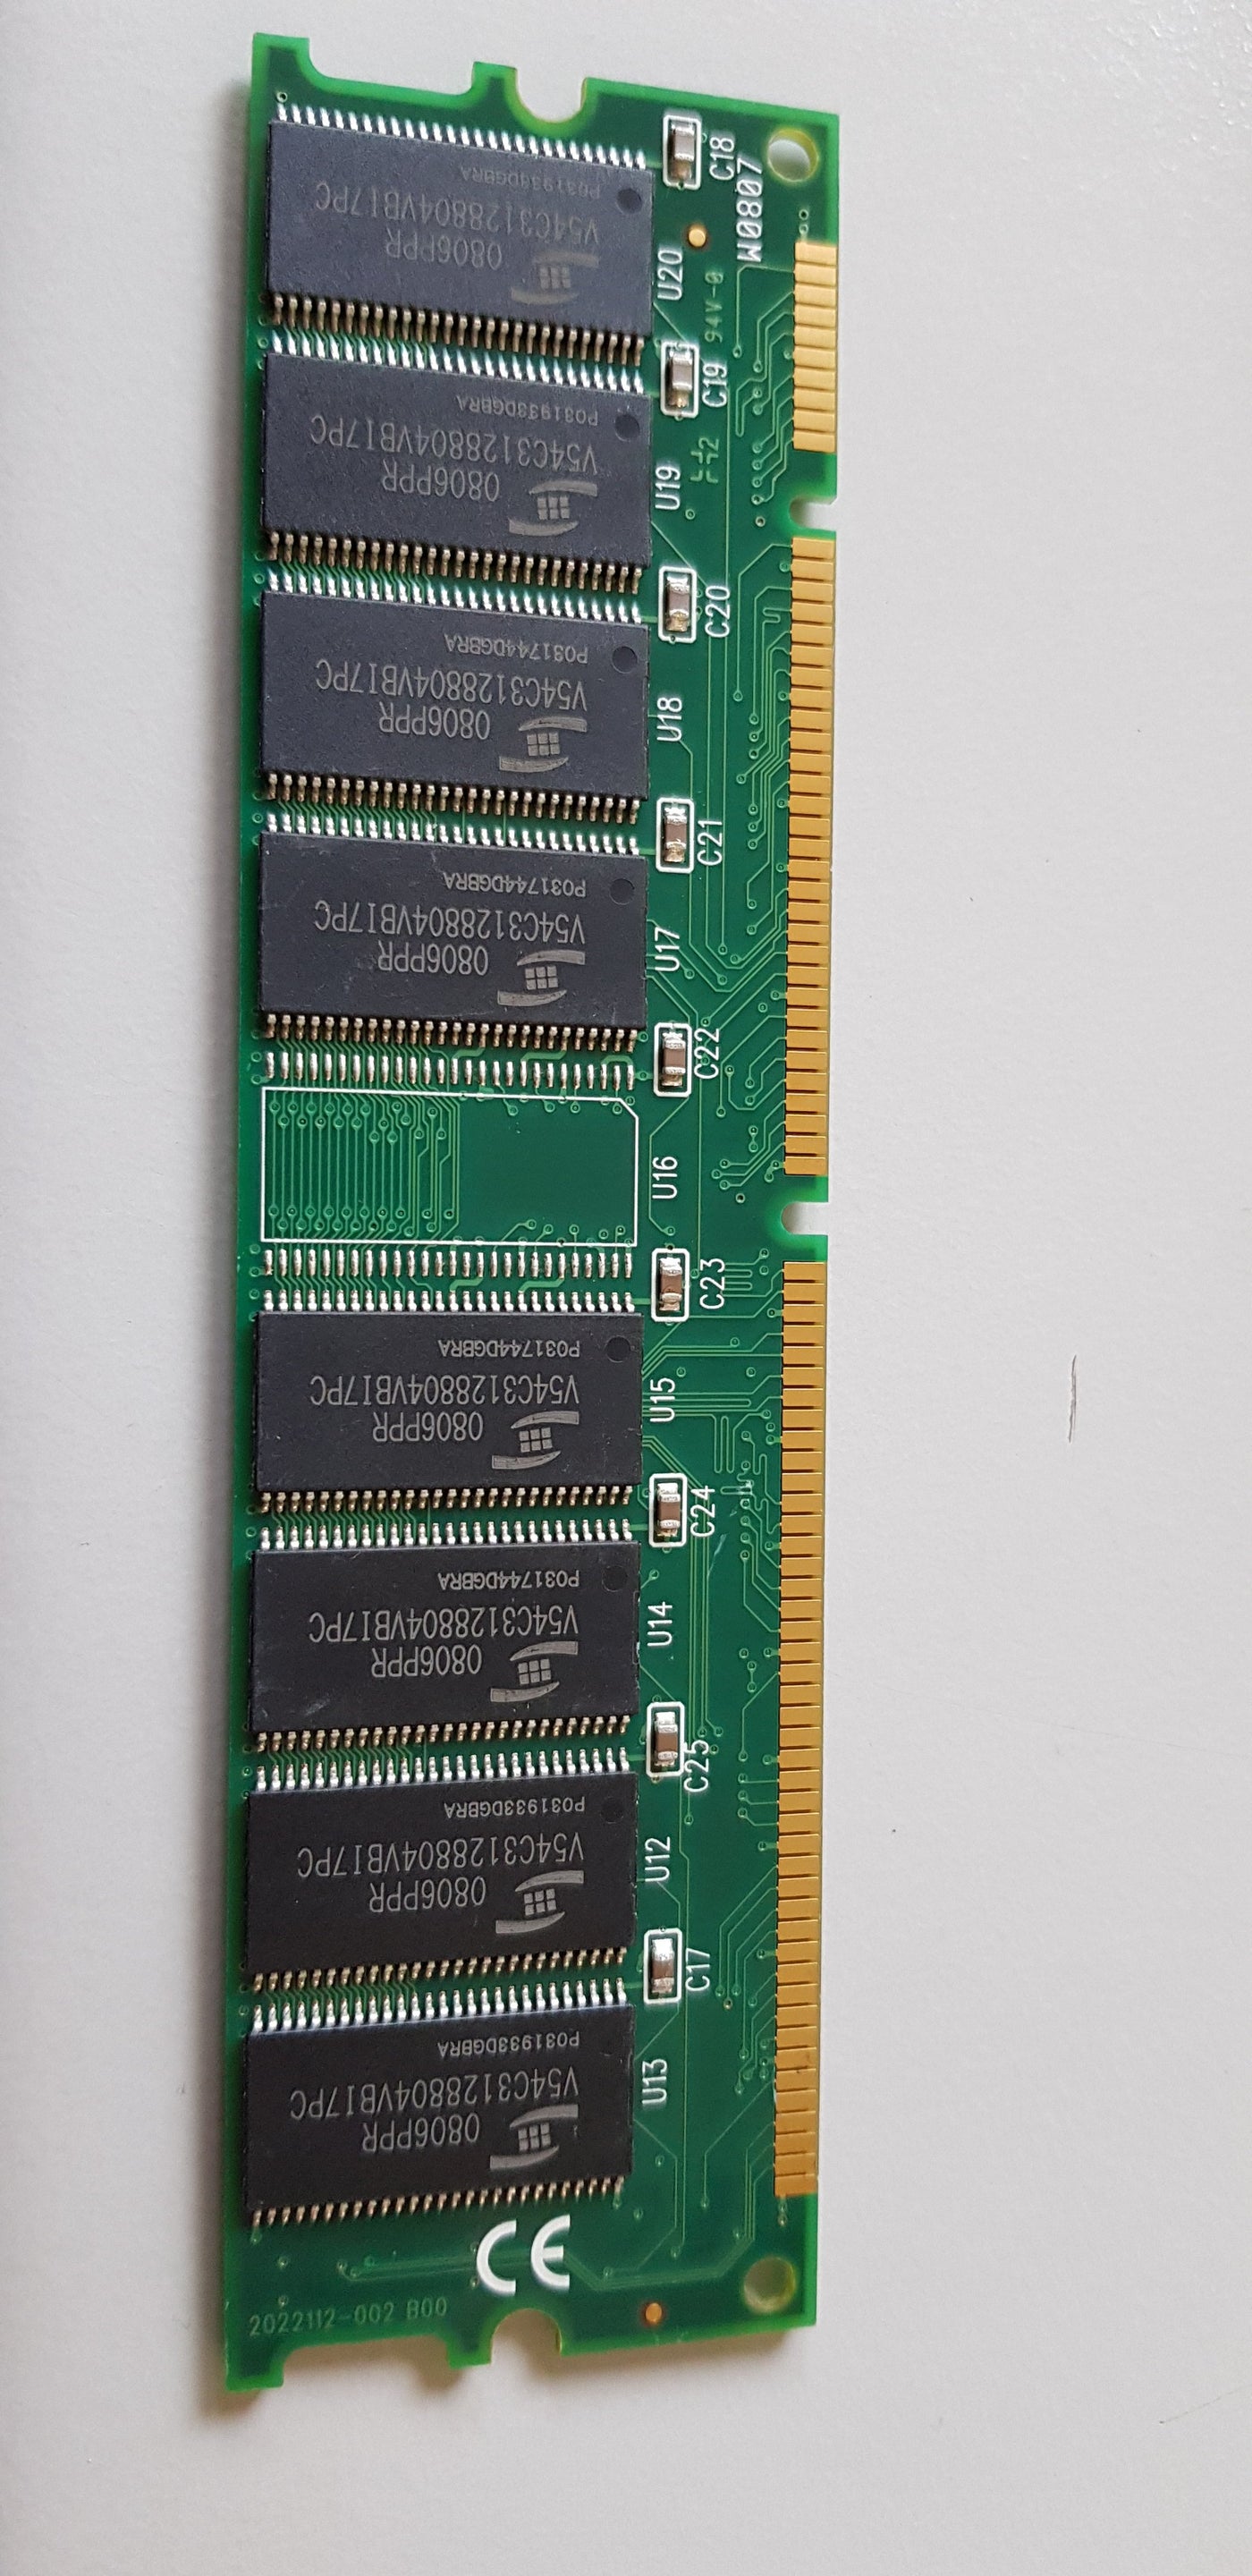 Kingston 256MB PC133 CL2 168Pin SDRAM DIMM Memory Module KT833W39001 / 9992112-561.A01LF